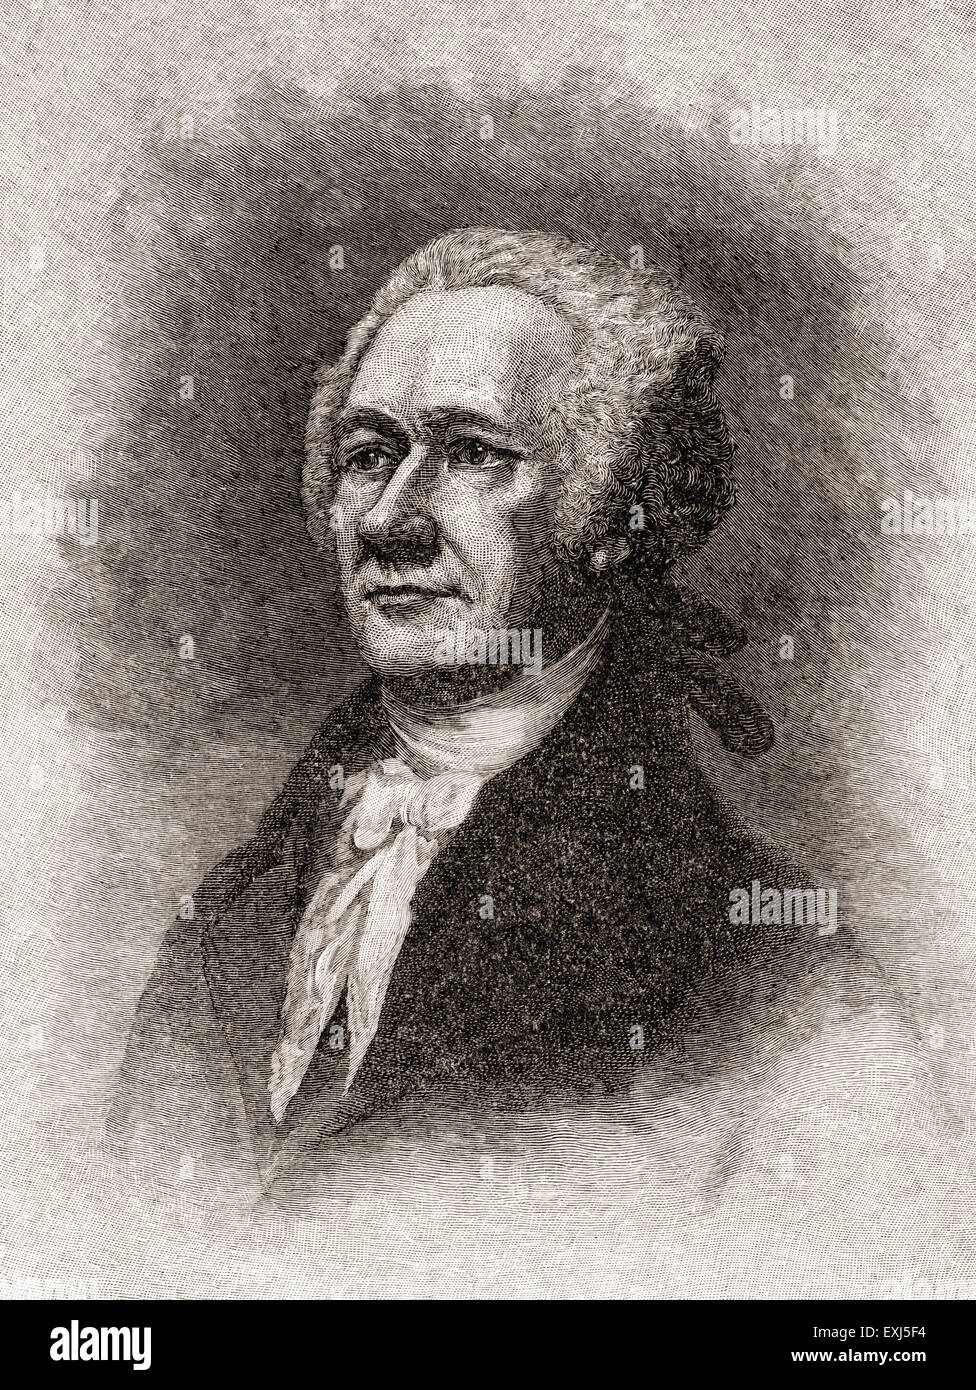 Alexander Hamilton, 1755 oder 1757 –1804.  Gründervater der Vereinigten Staaten, 1st Secretary Of The Treasury und Oberbefehlshaber Berater von General George Washington. Stockfoto